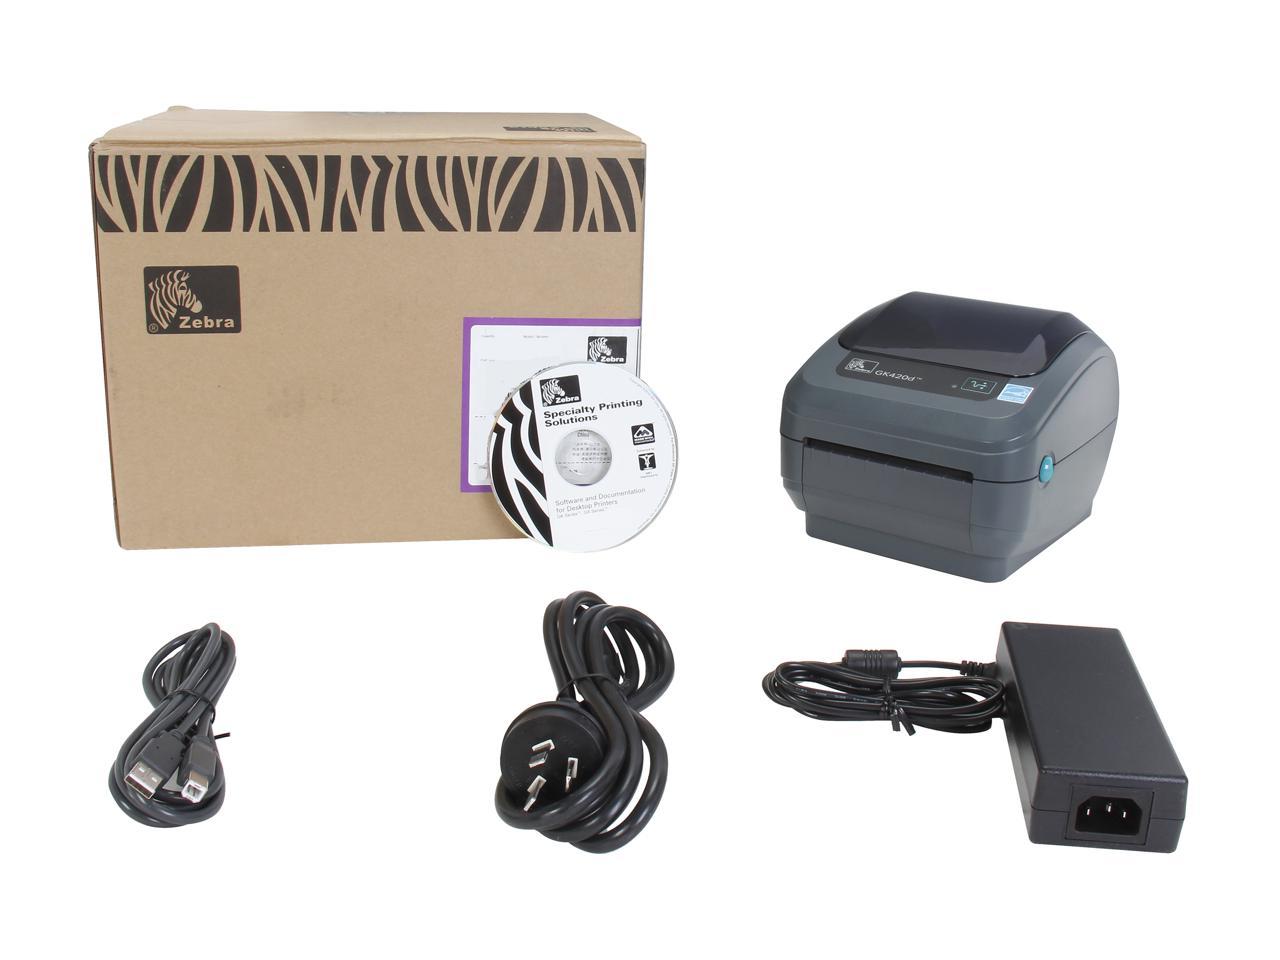 Zebra Gk420d Direct Thermal Printer Monochrome Desktop Label Print 0188